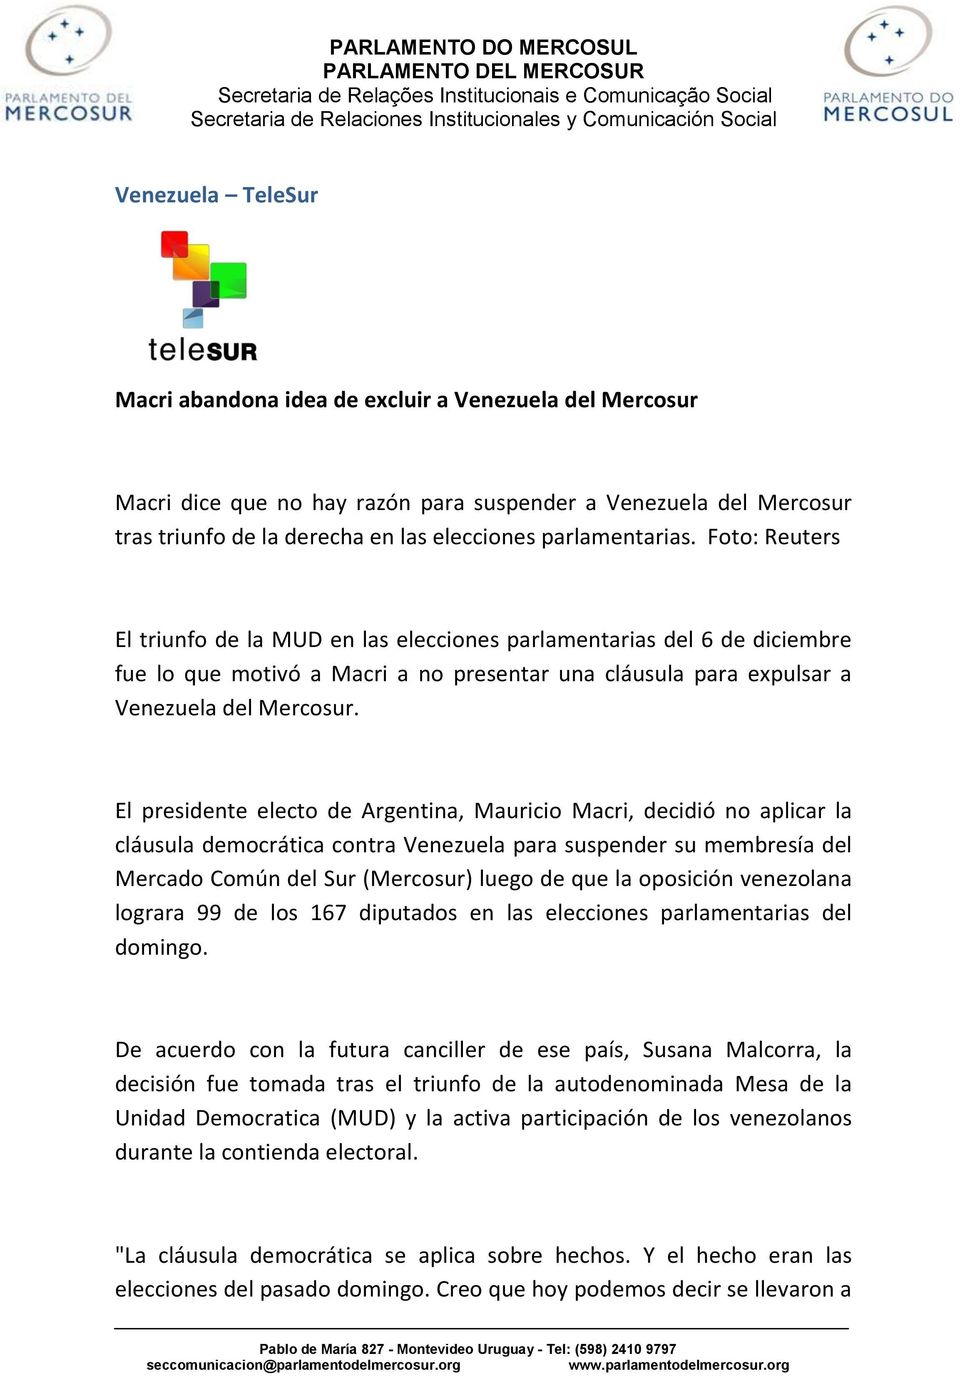 El presidente electo de Argentina, Mauricio Macri, decidió no aplicar la cláusula democrática contra Venezuela para suspender su membresía del Mercado Común del Sur (Mercosur) luego de que la